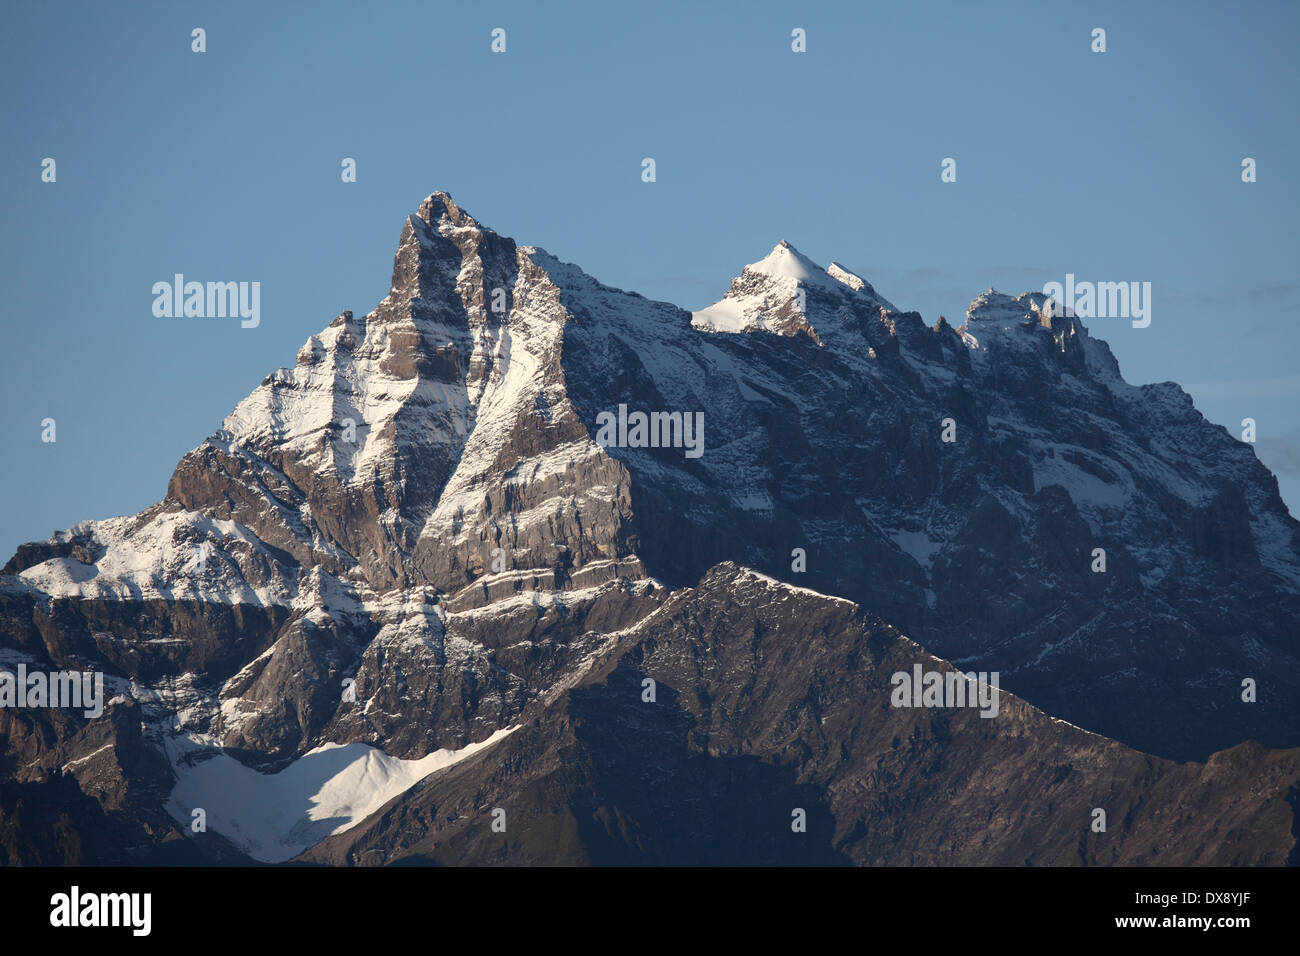 The multi-summited Dents du Midi mountain in Switzerland. Stock Photo